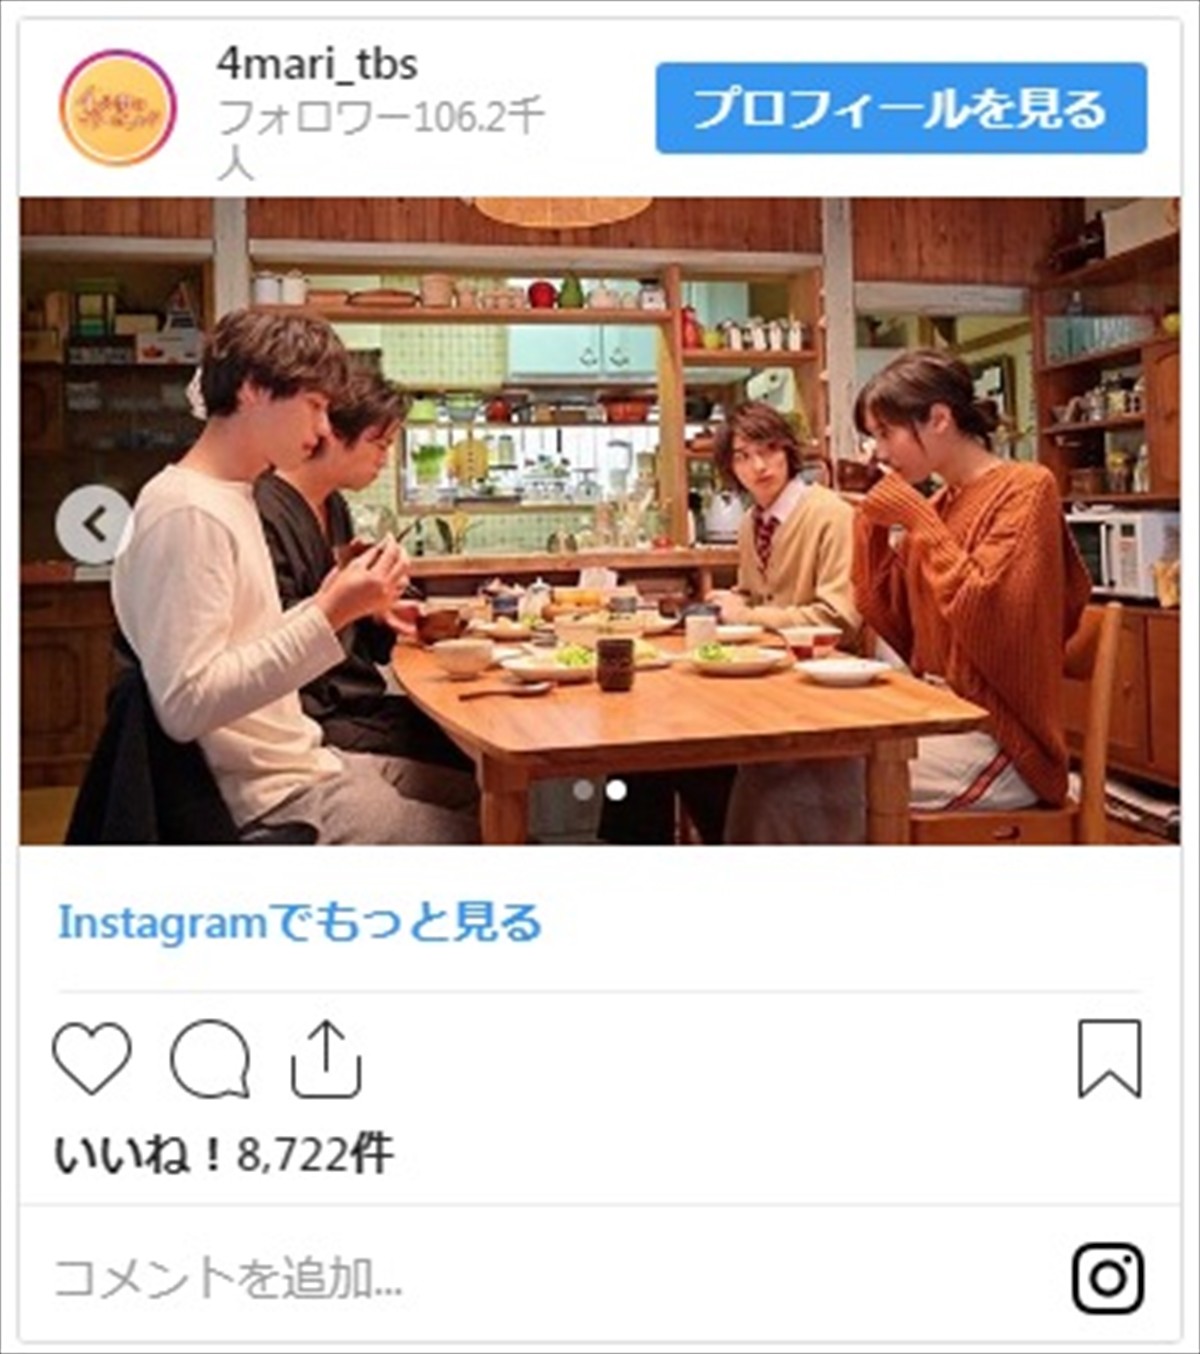 横浜流星、姉・菜々緒のために薬膳料理を猛勉強！『4マリ』食卓ショット公開